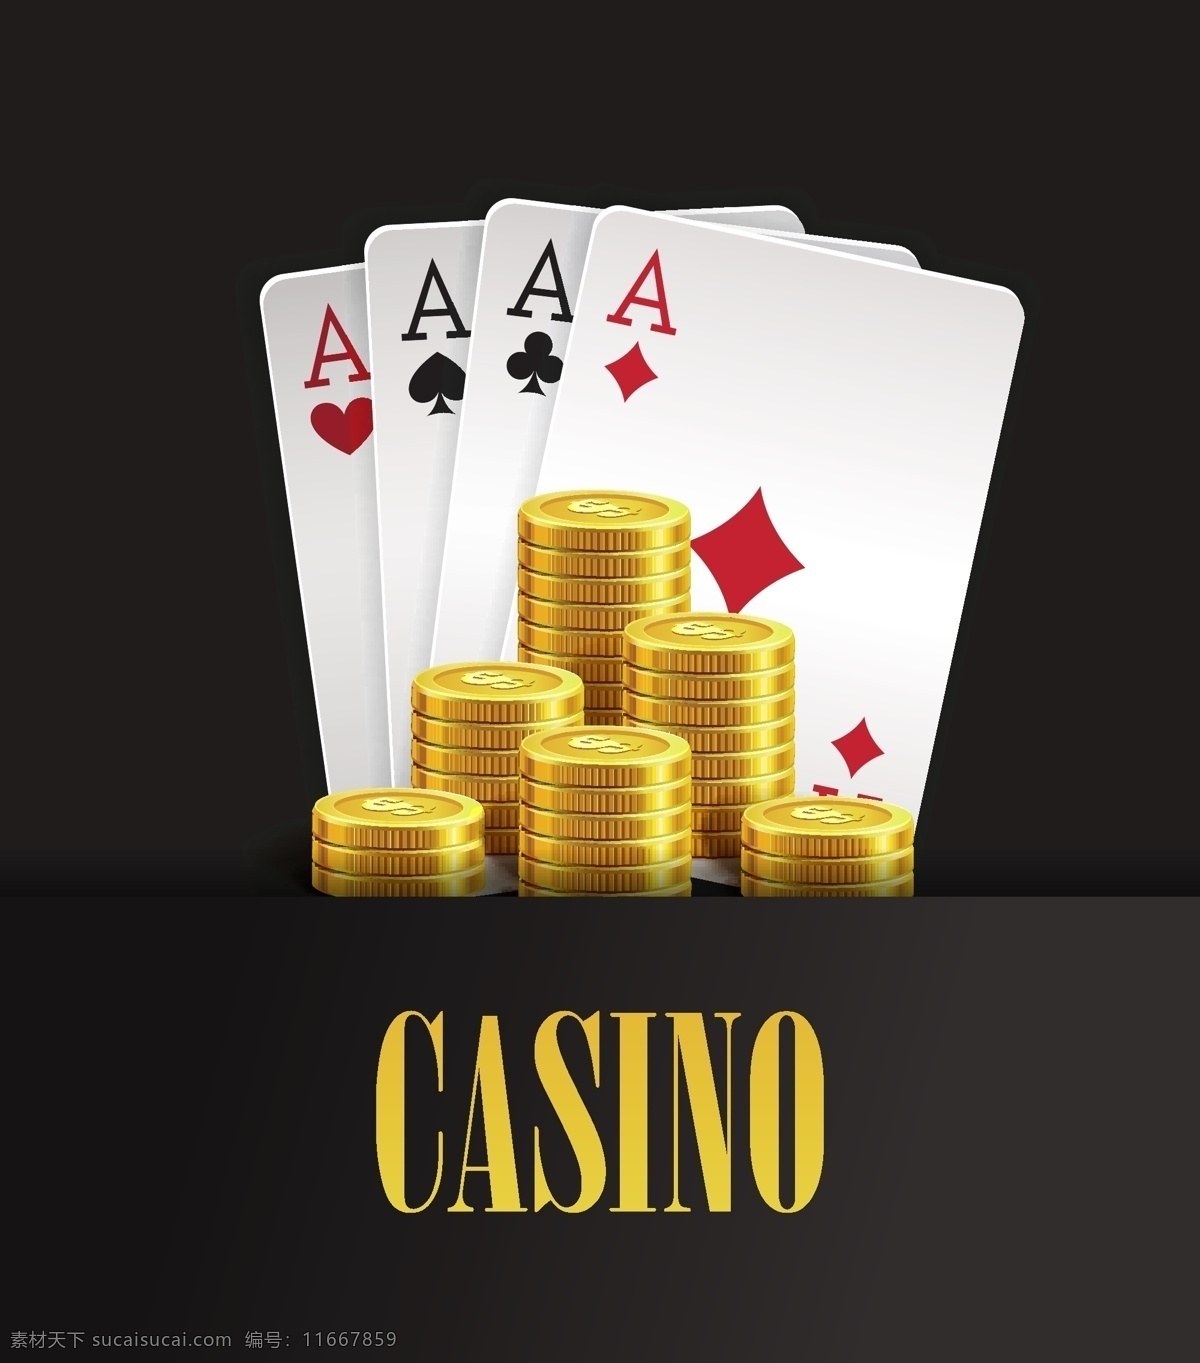 黑 金色 赌场 金币 卡通 矢量 扑克牌 钱币 名称 突出 几何 矢量素材 设计素材 平面素材